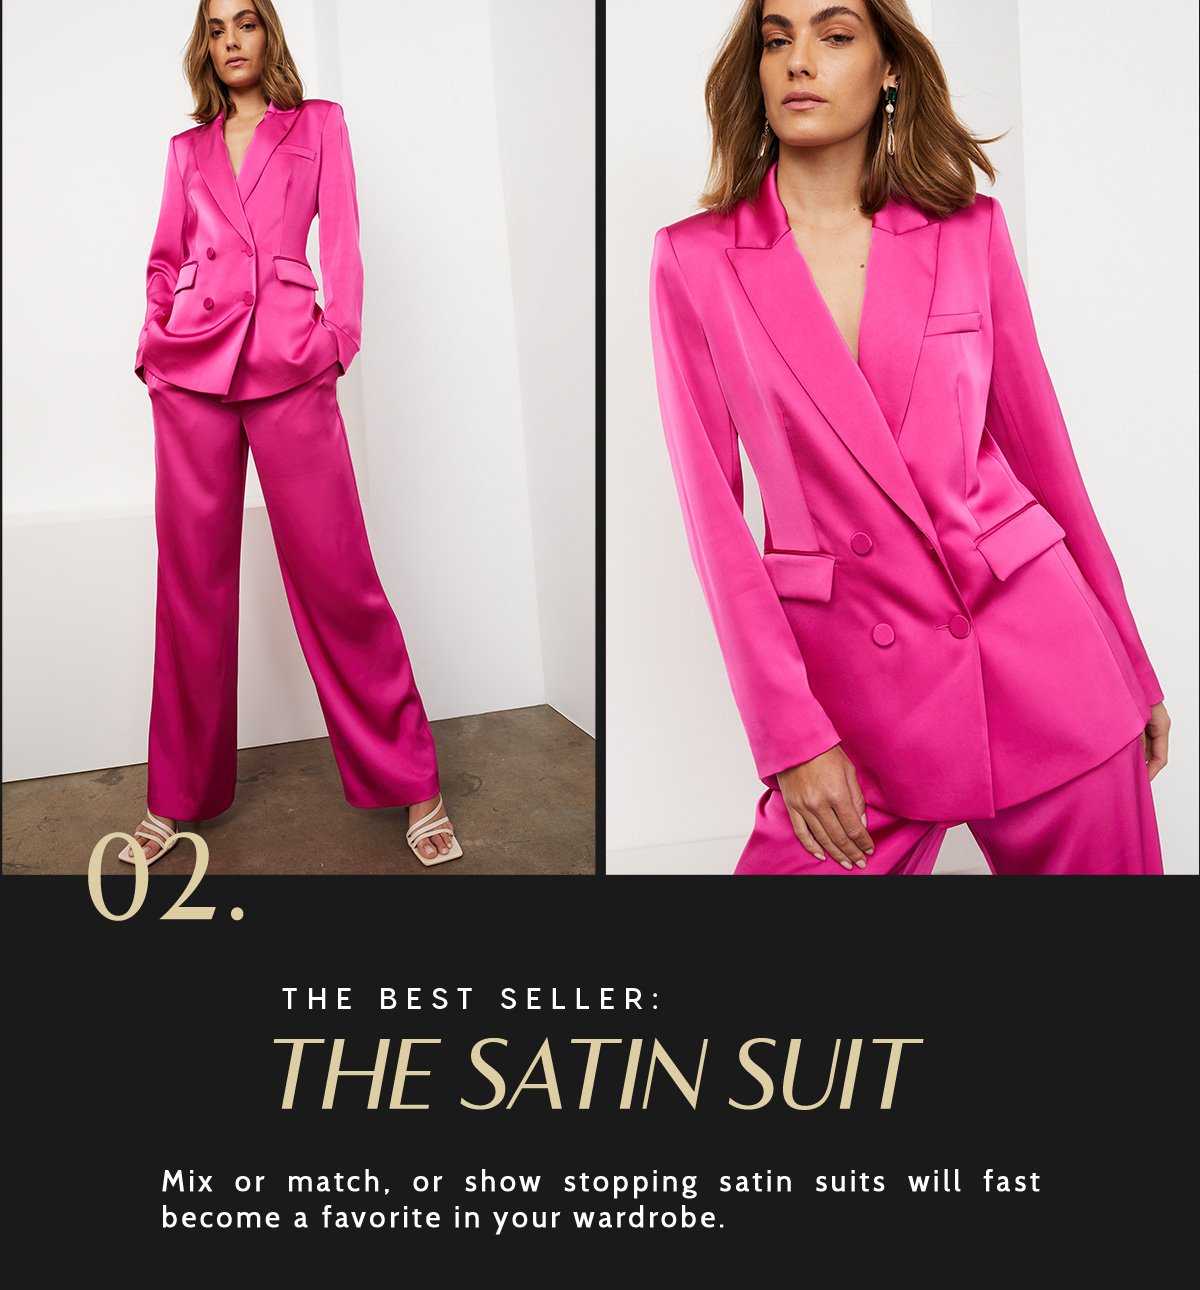 The Satin Suit